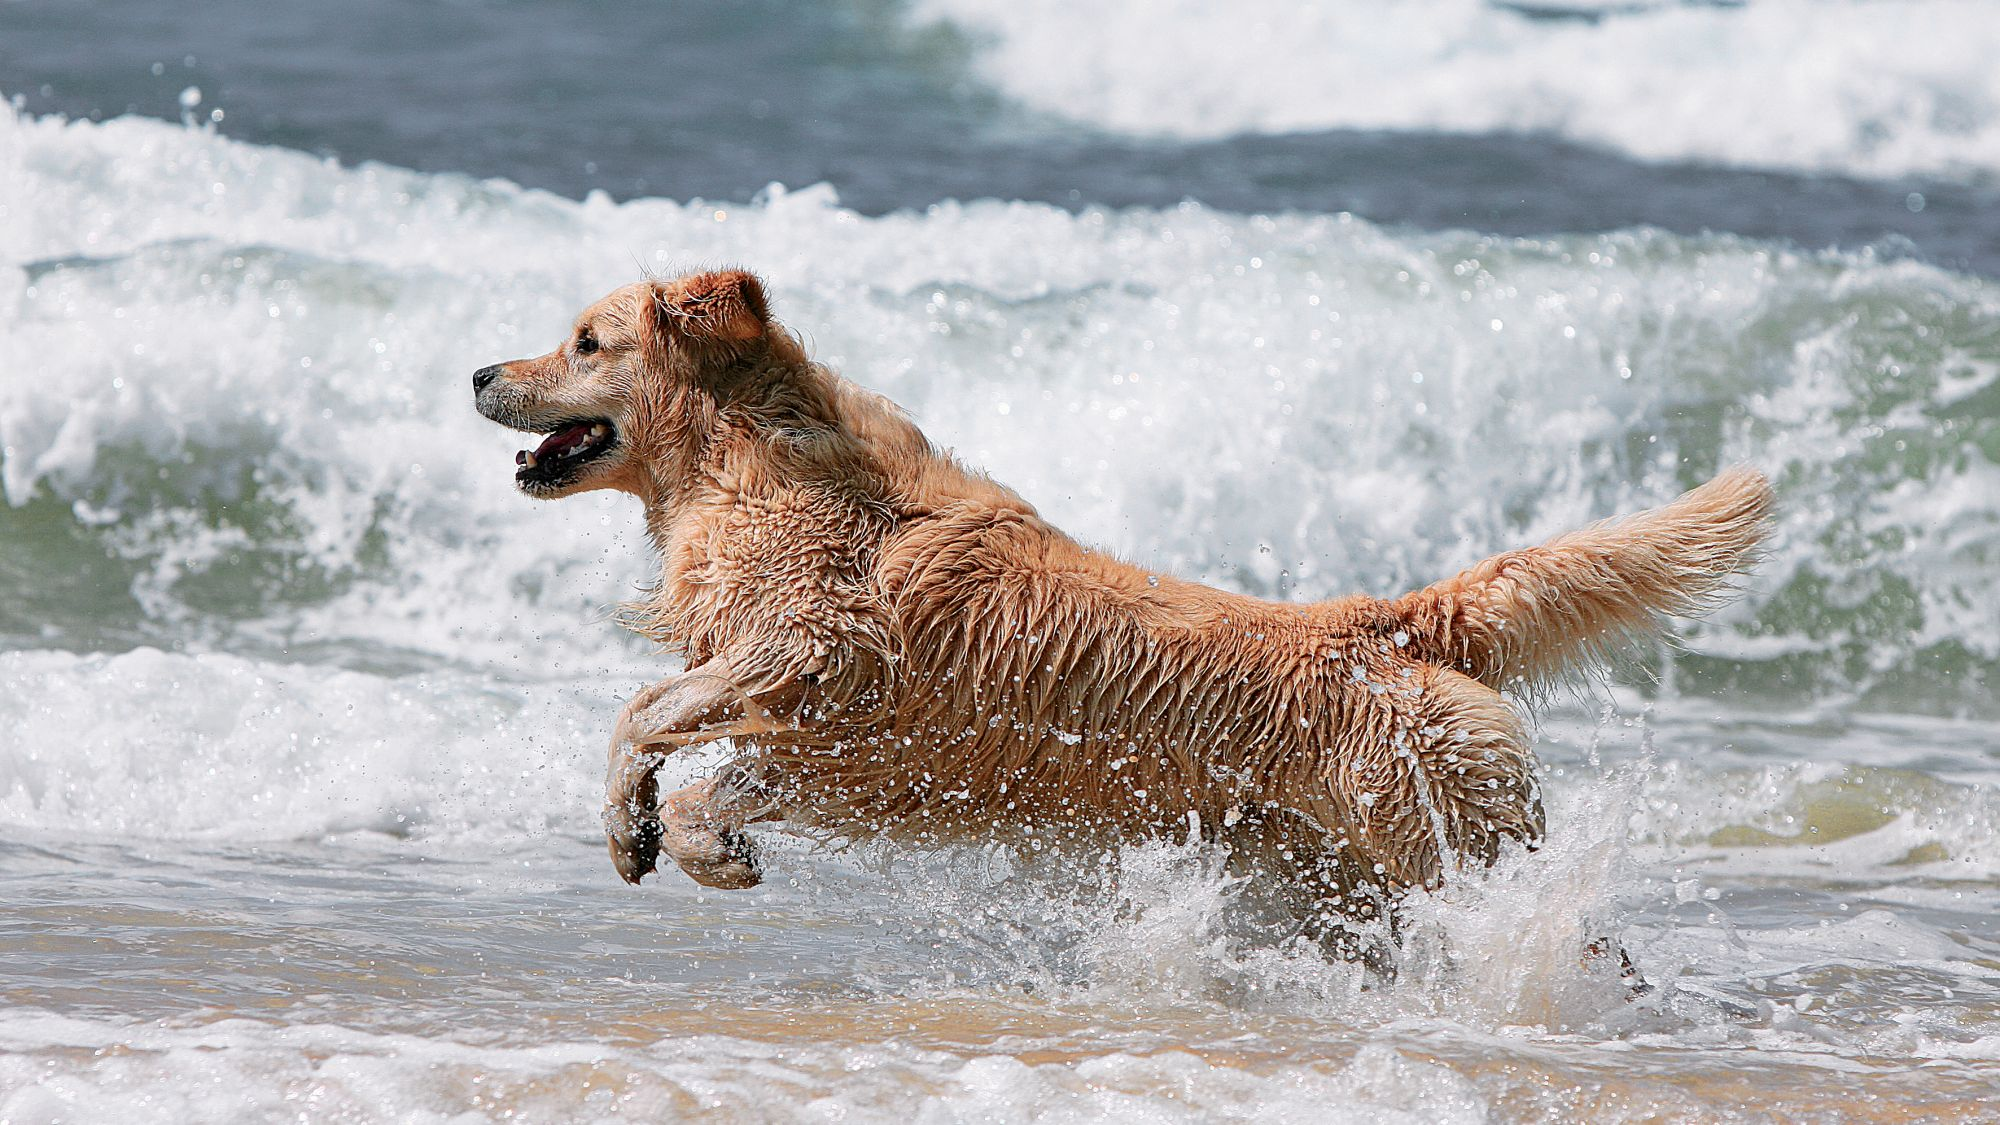 Golden Retriever running through waves on a beach